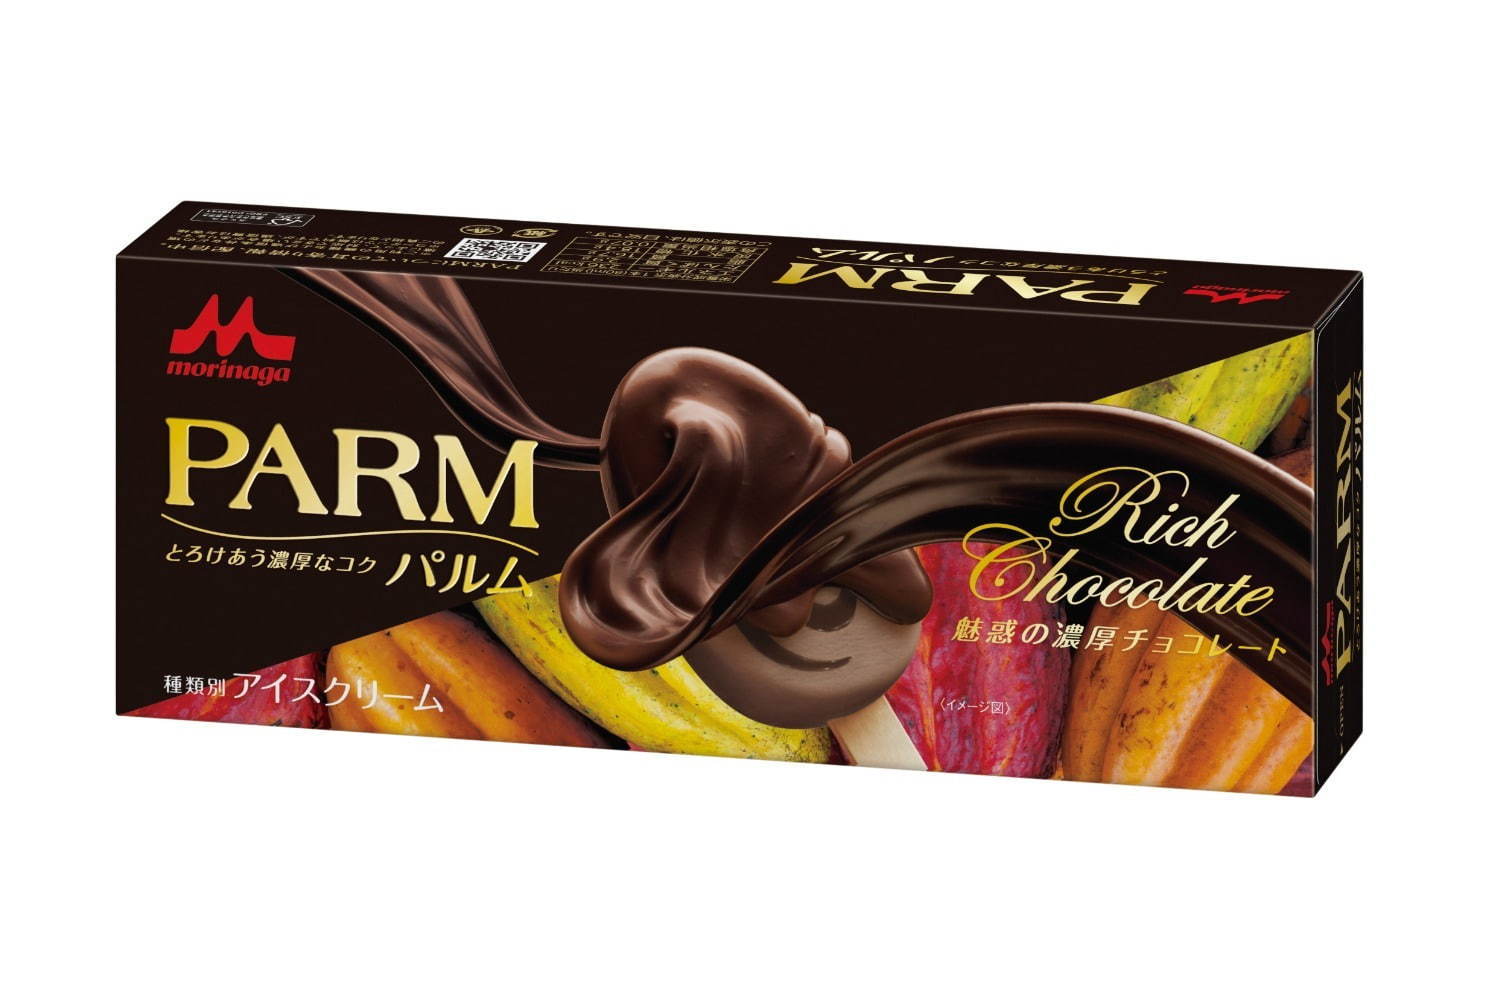 パルム 魅惑の濃厚チョコレート 生チョコソース ビターチョコアイス 産地の異なるカカオを使用 ファッションプレス